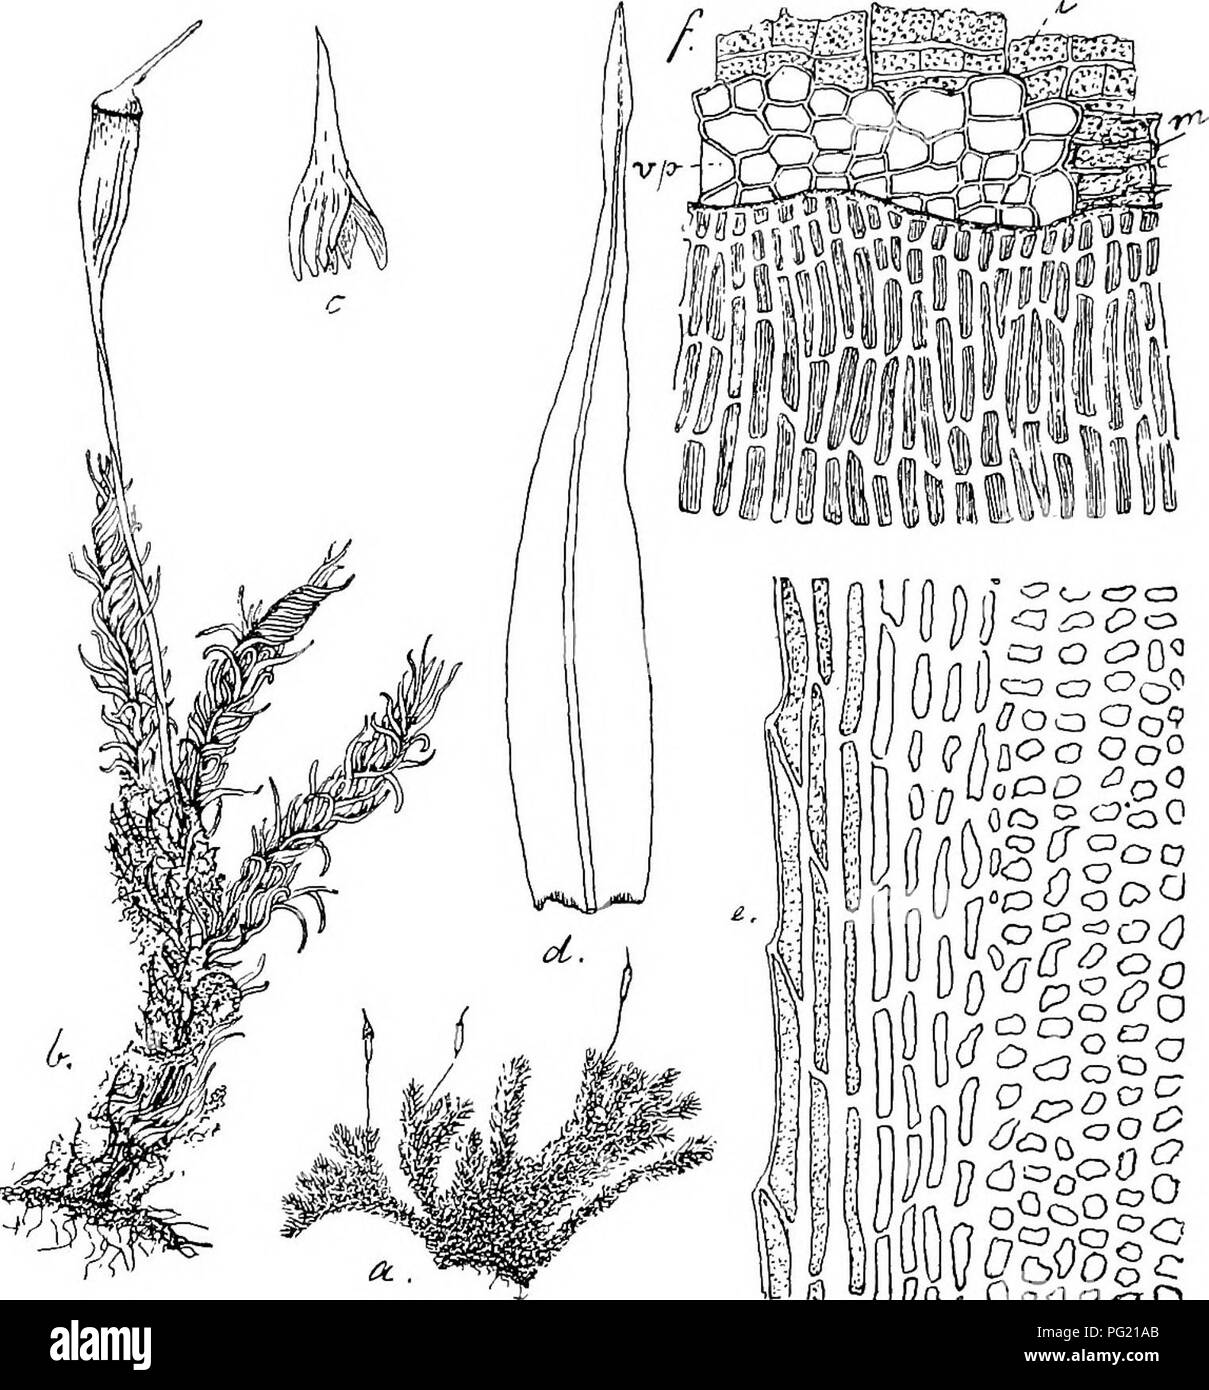 . Flore de Buitenzorg. La botanica. 457 lockerem, dunnwaudigem, getiipfeltem Grundgewebe, welches deutlich in die substere'iden Aussenzellen abgesetzt ist, ohne Centralstra,iig. Blatter versehiedengeformt; die oberen trocken spiralig, links um den Stengel gewunden, oben Fig. 84.. COoOqO (7ooOo' PIANO Oo° /-, CP CO (-T /I Micromitrium goniorhynchum Jaeo. ^. Habitusbild (natfirl. Grosse); b. Desgl. i; c. Haube -'/'. rf. È Stengelblatt. e. Blattrand mit verlangerten Zellen !t ± l. f. Peristom gesohen dorsale ^-2-2.; v.f. Vorperistom; m. ausseres (Membran) Peristom; i. innei'es Peristom. ineist zu einer S Foto Stock